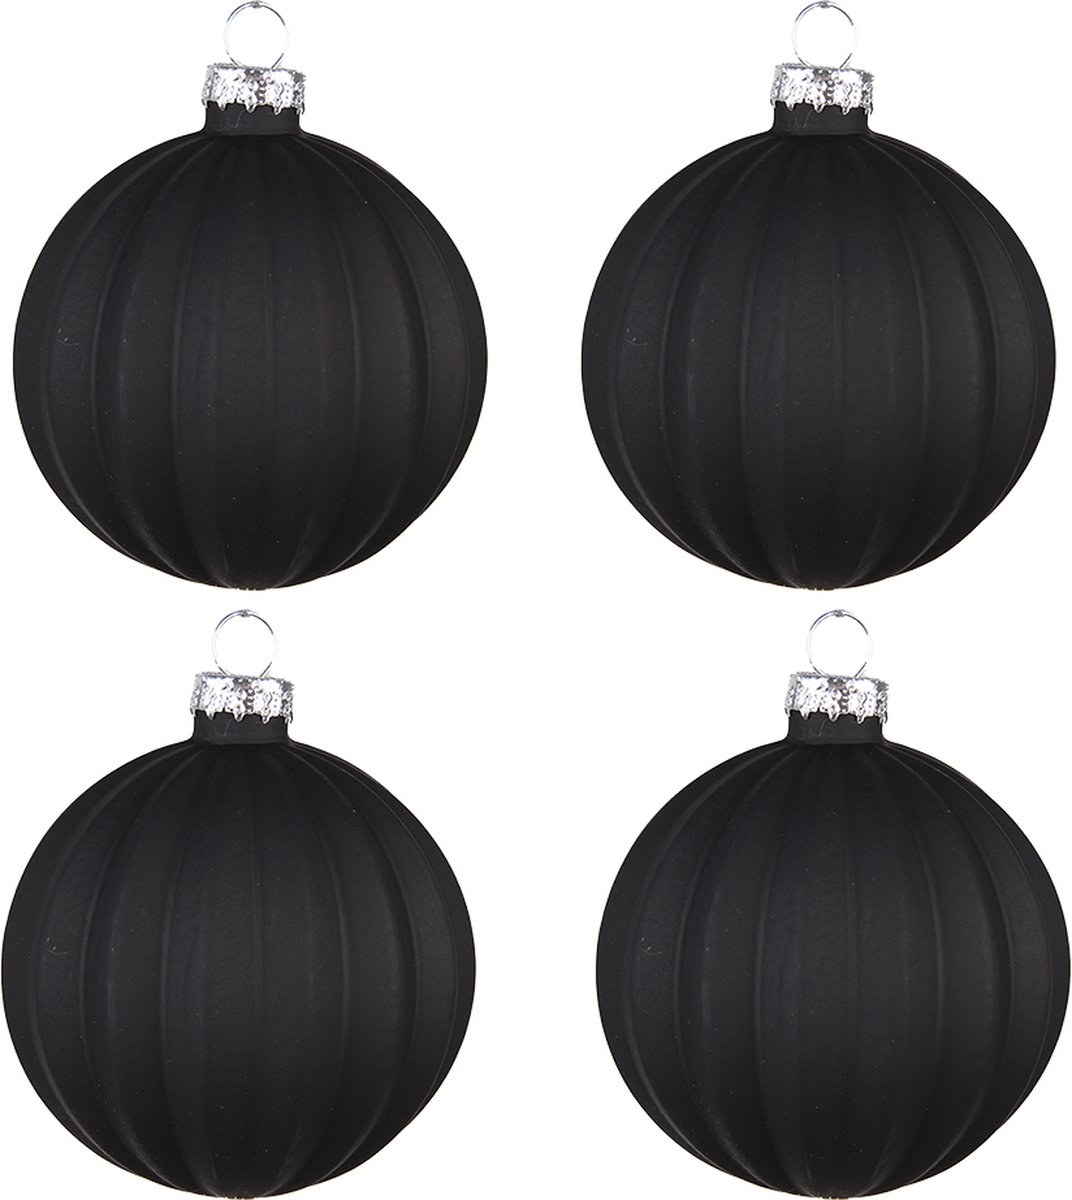 HAES DECO - Kerstballen Set van 4 - Formaat (4) Ø 8x8 cm - Kleur Zwart - Materiaal Glas - Kerstversiering, Kerstdecoratie, Decoratie Hanger, Kerstboomversiering